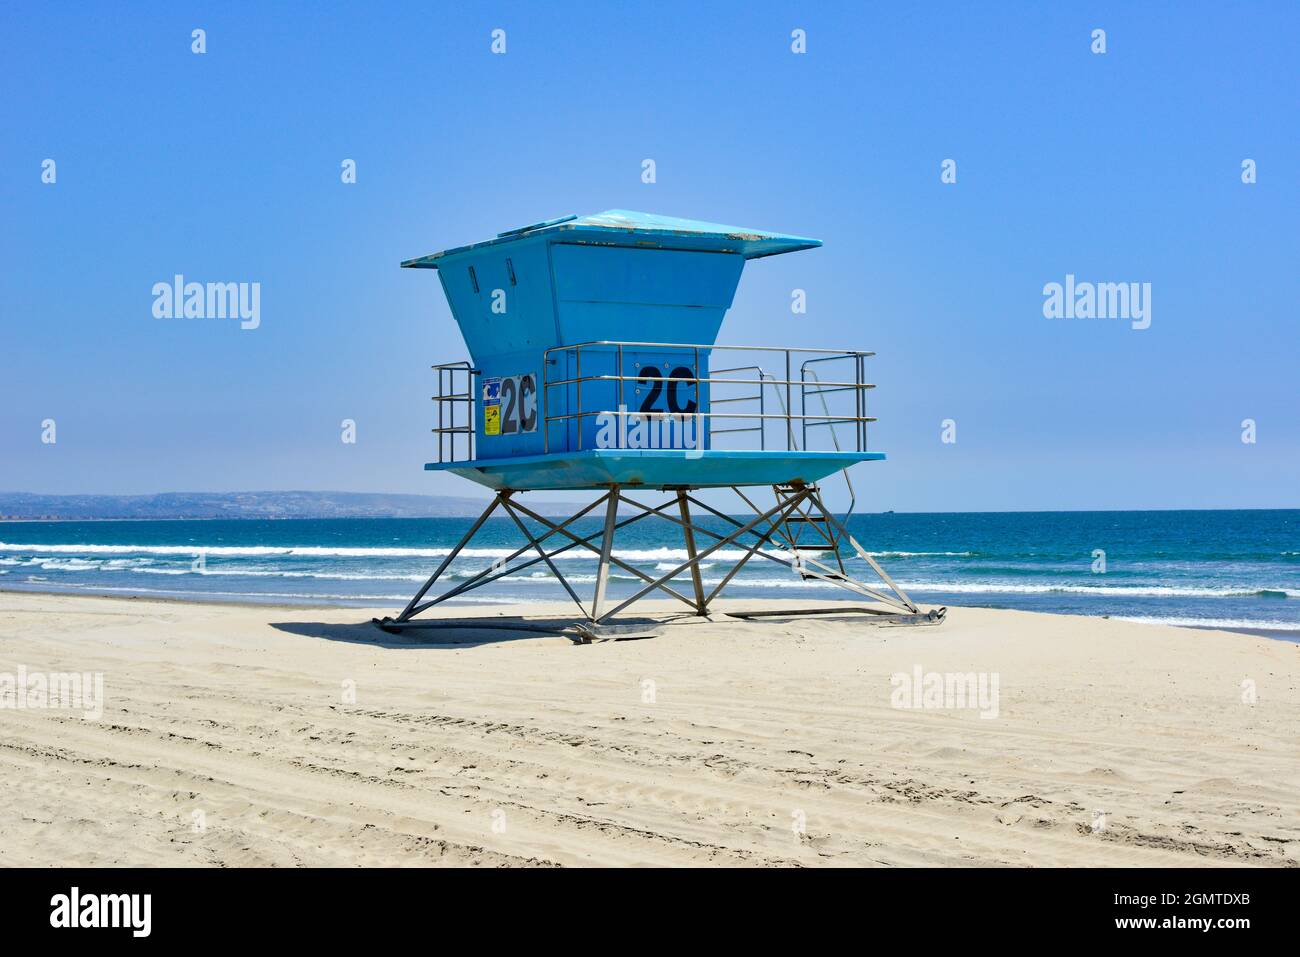 Der legendäre südkalifornische Rettungsschwimmer-Turm steht in Blau am weißen Sandstrand Coronado Beach, San Diego, CA, USA Stockfoto